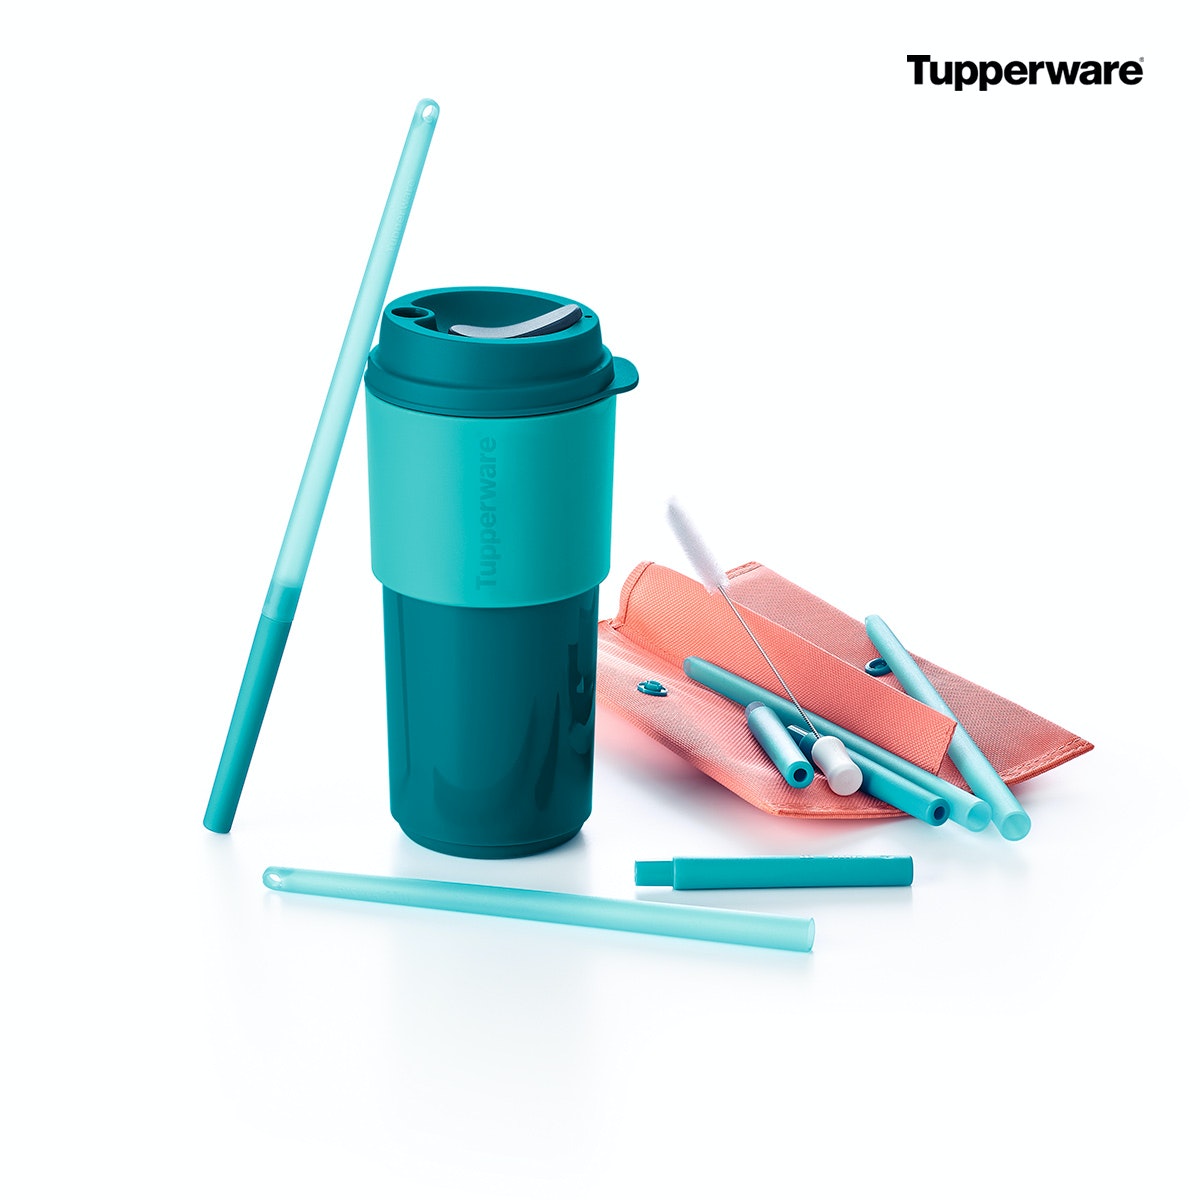 Mondialement connue pour ses contenants en plastique, Tupperware